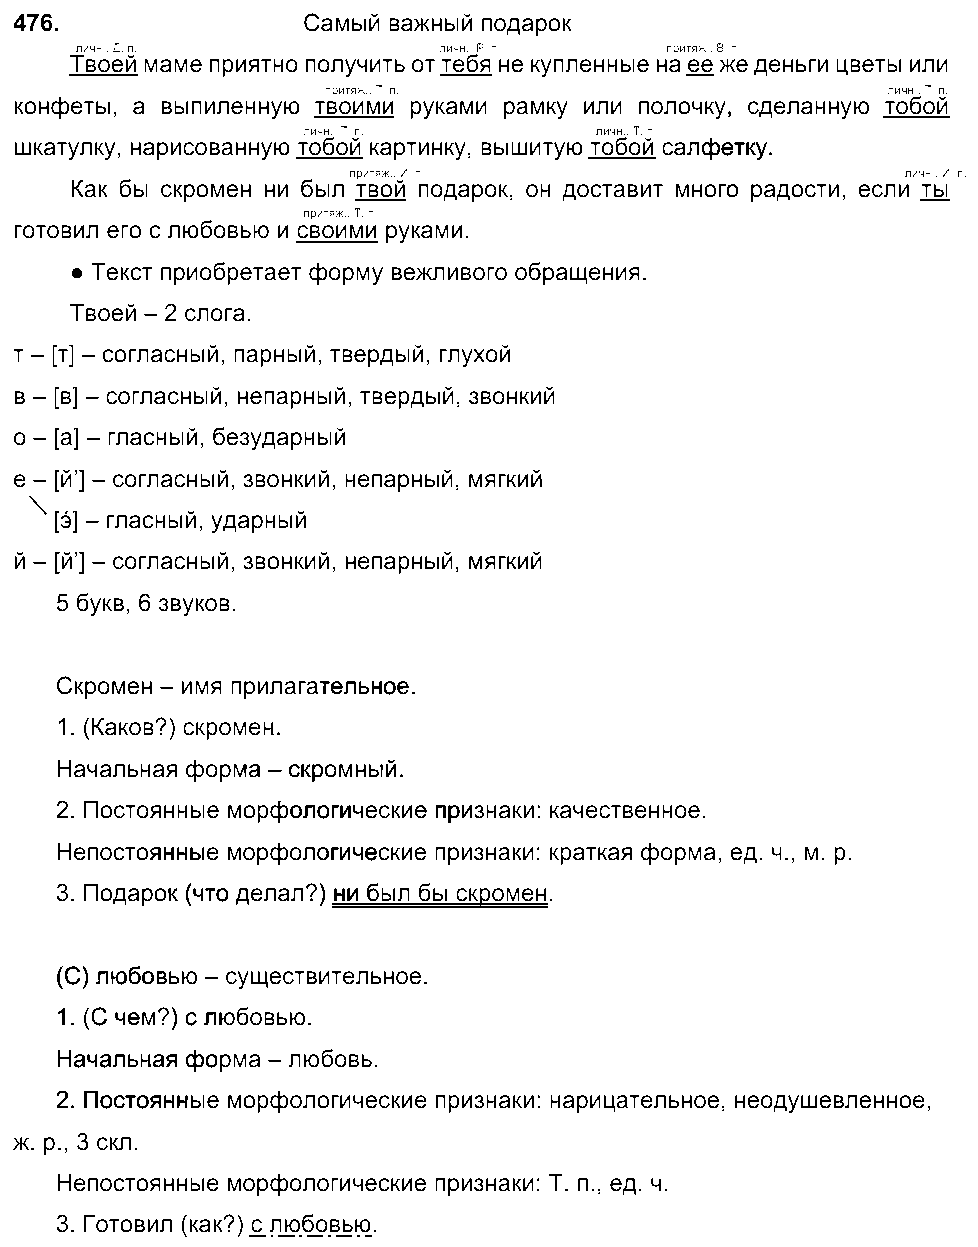 ГДЗ Русский язык 6 класс - 476